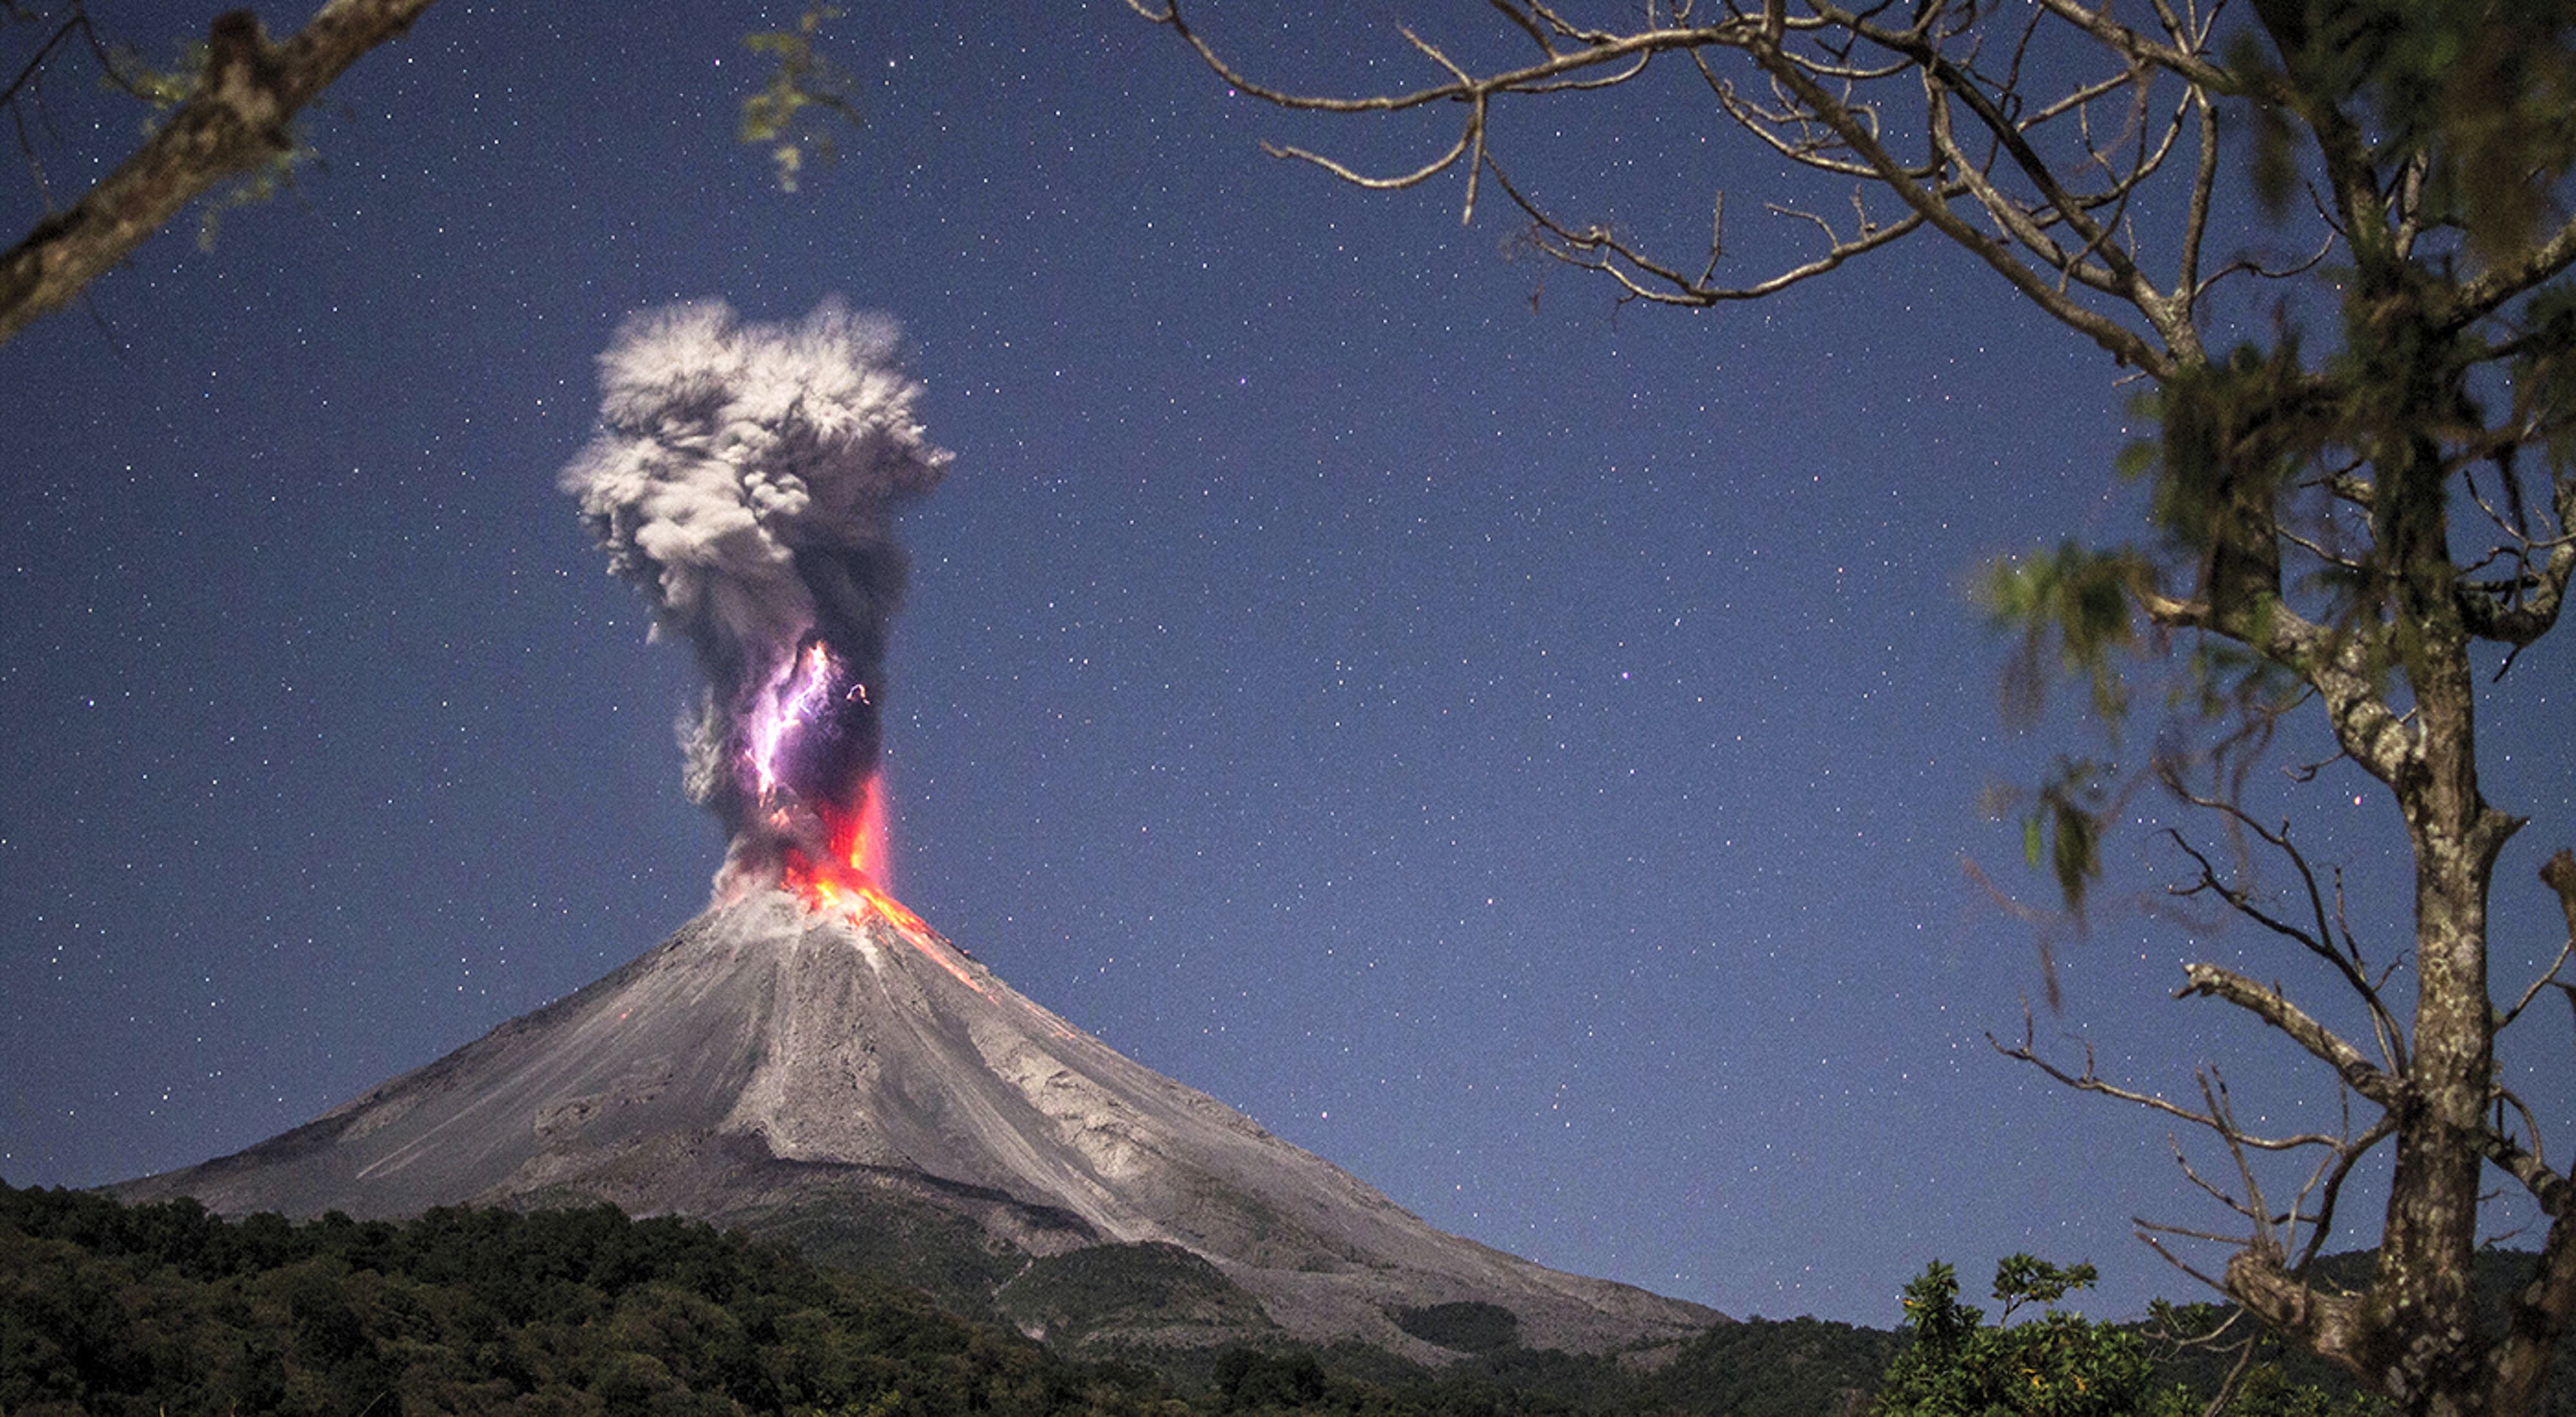 Energía pura y fuego." Volcán de Colima en erupción durante la noche mostrando su fuerza, fue tomada en la Yerbabuena, Comala, Colima, Las erupciones volcánicas en pequeñas cantidades ayudan a reducir el calentamiento global. 